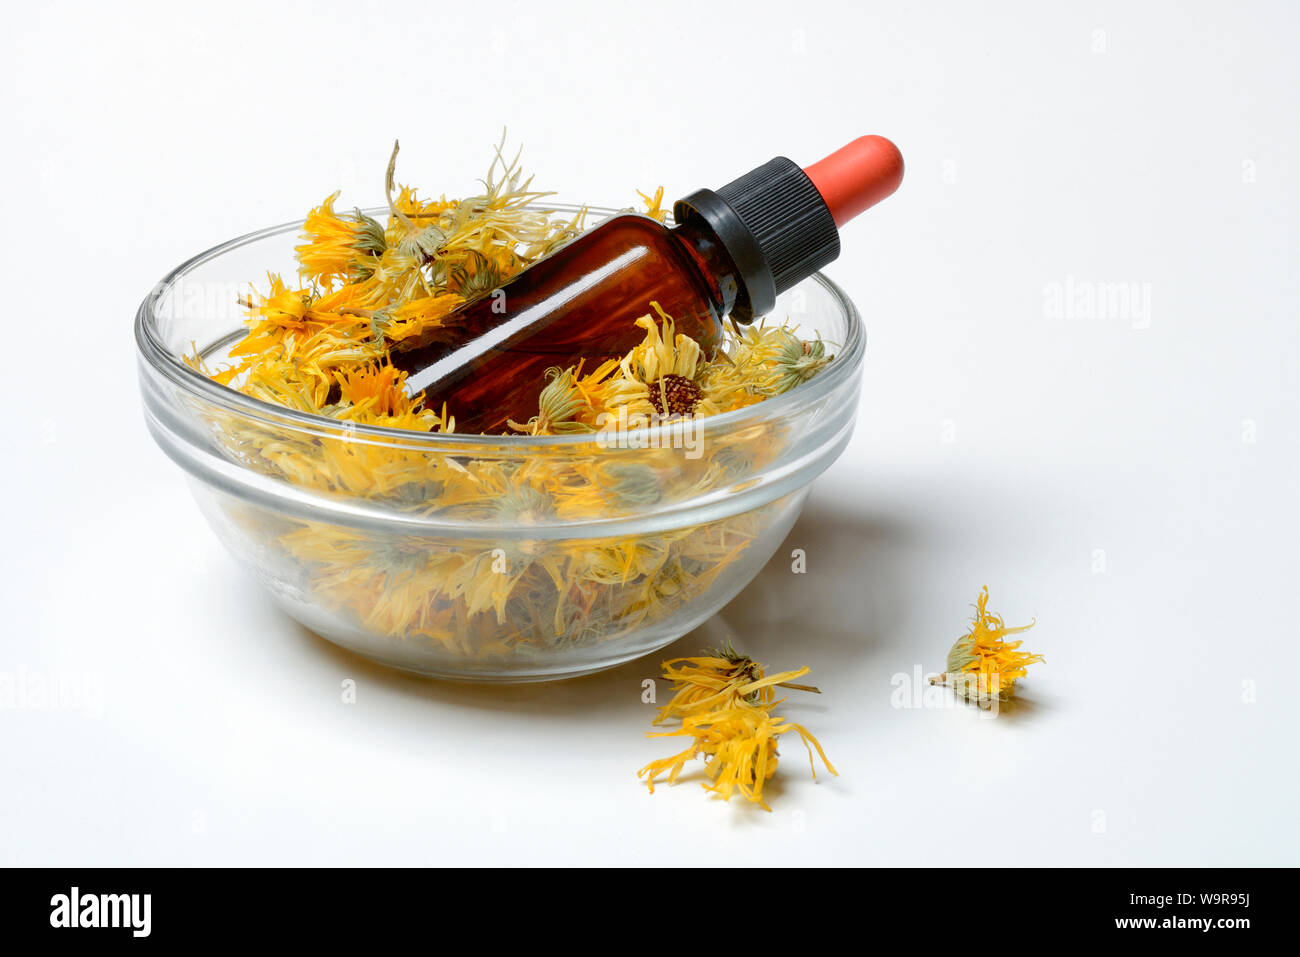 Getrocknete Ringelblumenblueten in Schale, Flaeschchen mit Ringelblumentinktur, Calendula officinalis Foto Stock